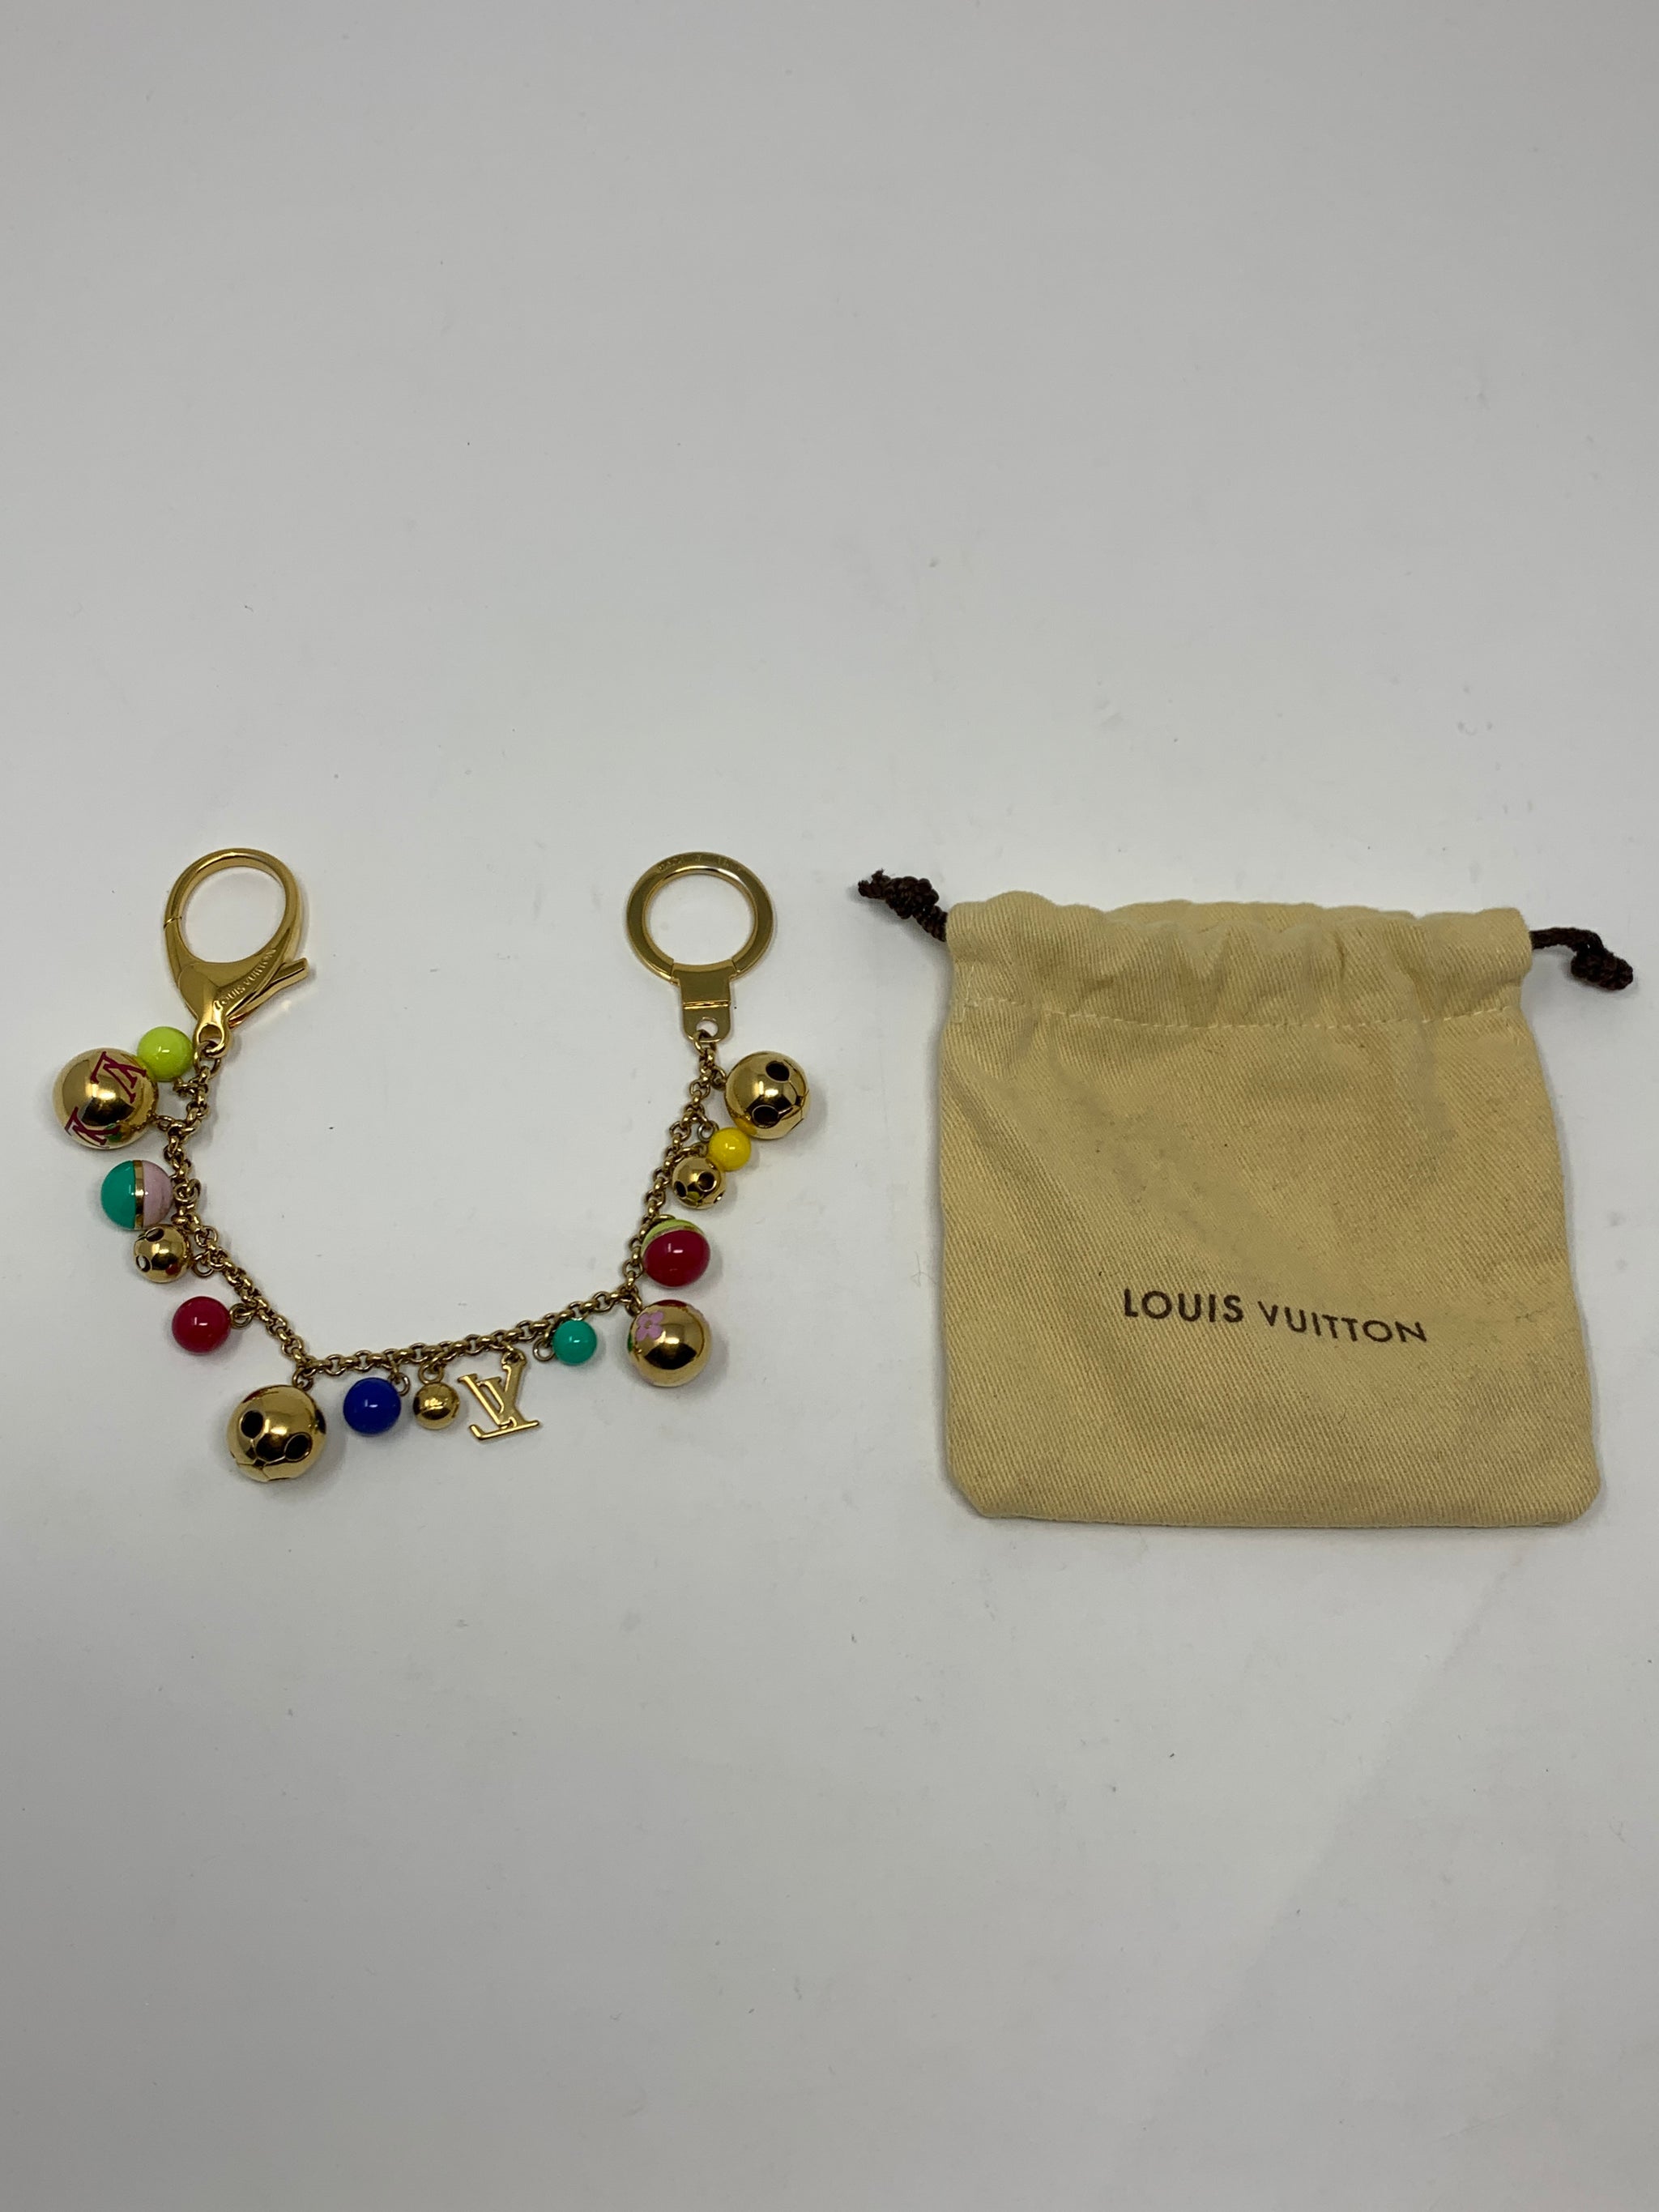 Louis Vuitton Bag Charm/Key Chain! - New Neu Glamour